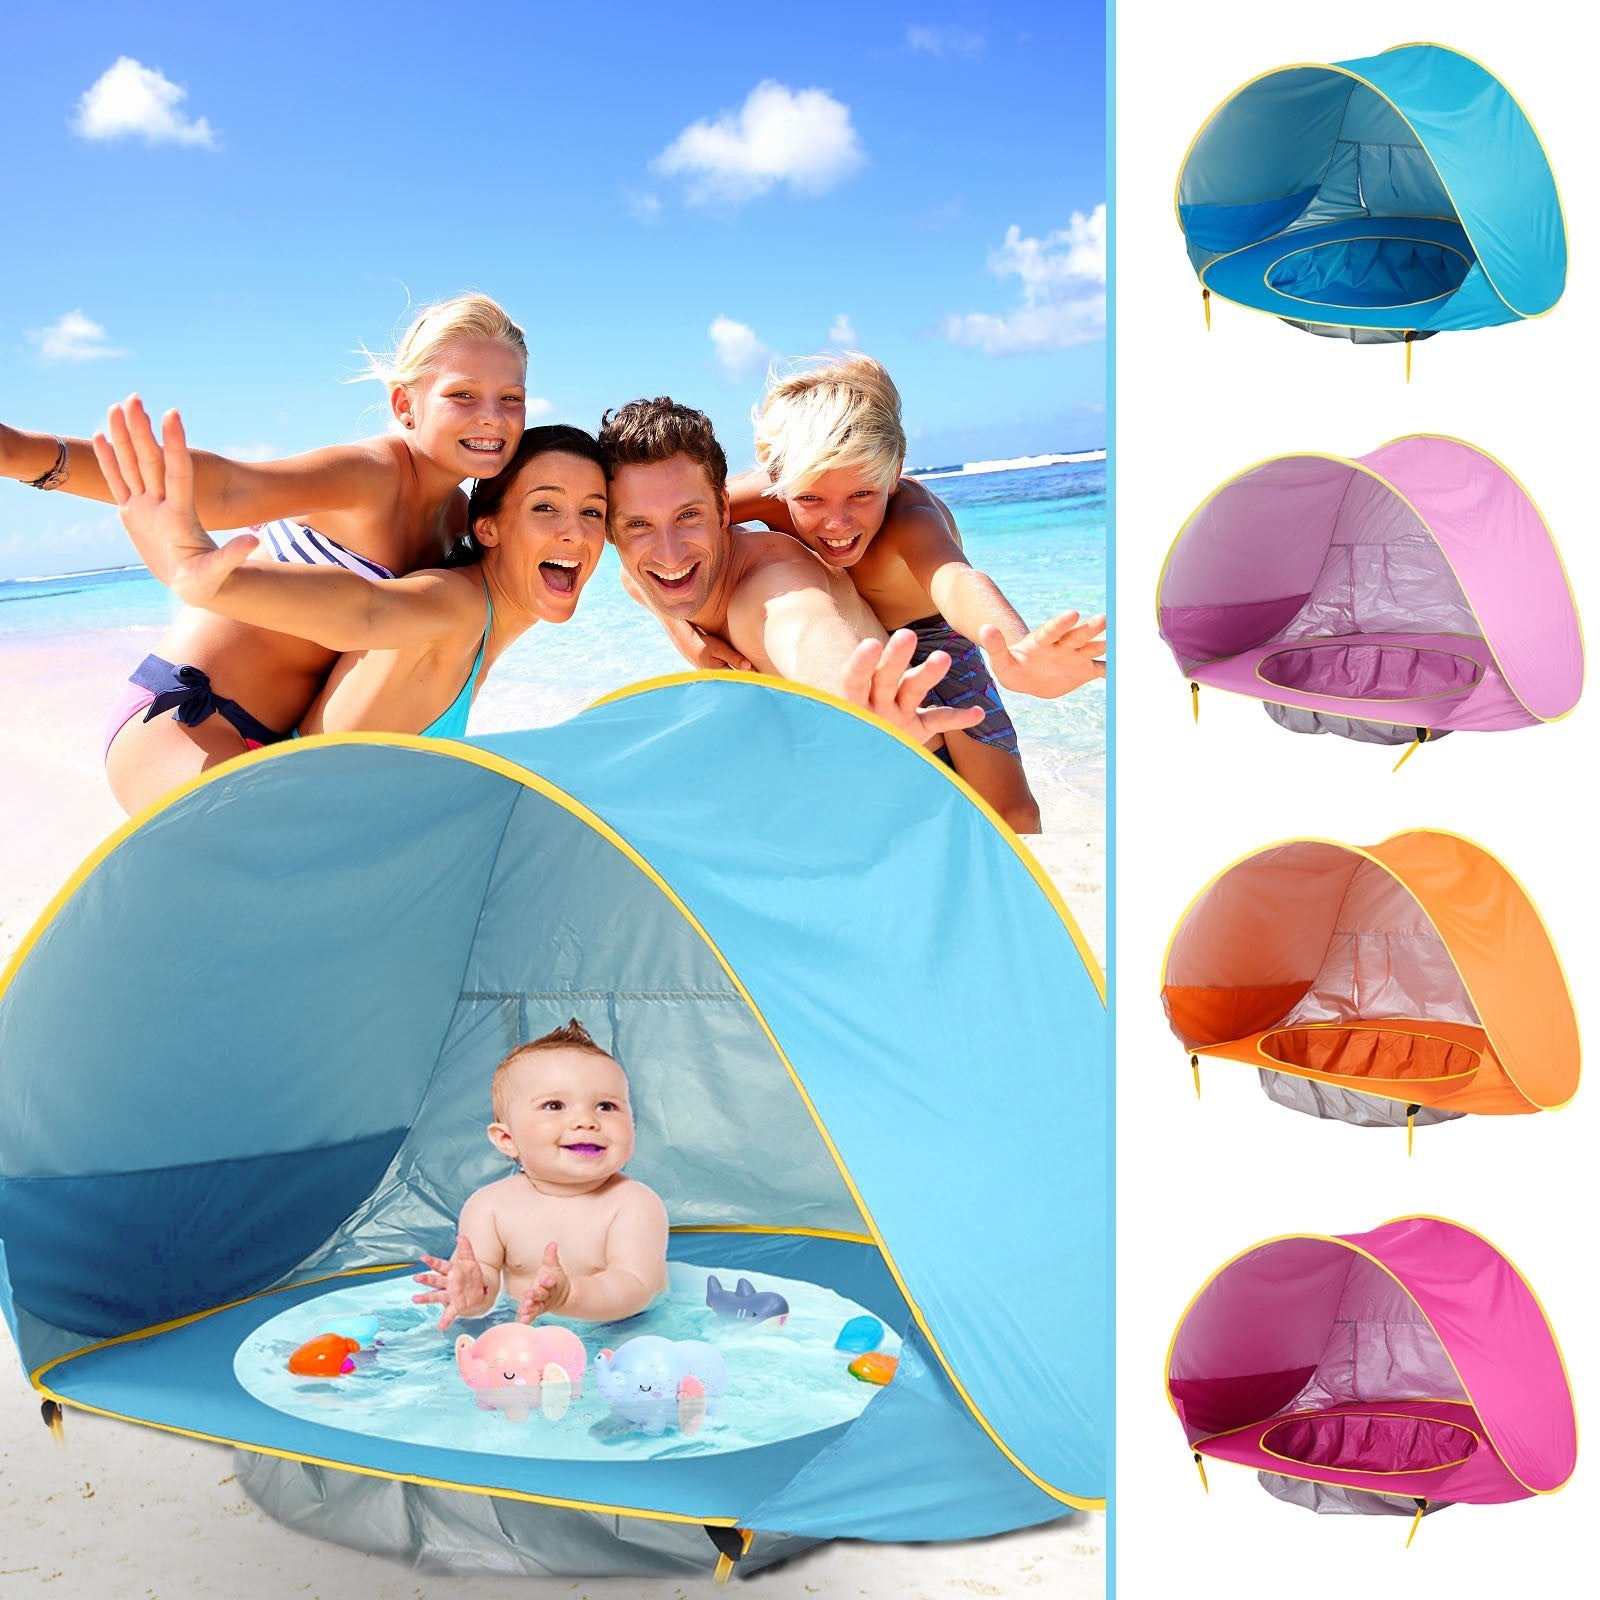 Gruppe von drei jungen Erwachsenen, zwei Frauen und einem Mann, freudig lächelnd vor einer Kamera am Strand, kniend hinter einem blauen BeachPool Zelt, in dem ein lächelndes Baby sitzt, umgeben von Wasserspielzeugen in einem integrierten Mini-Pool.